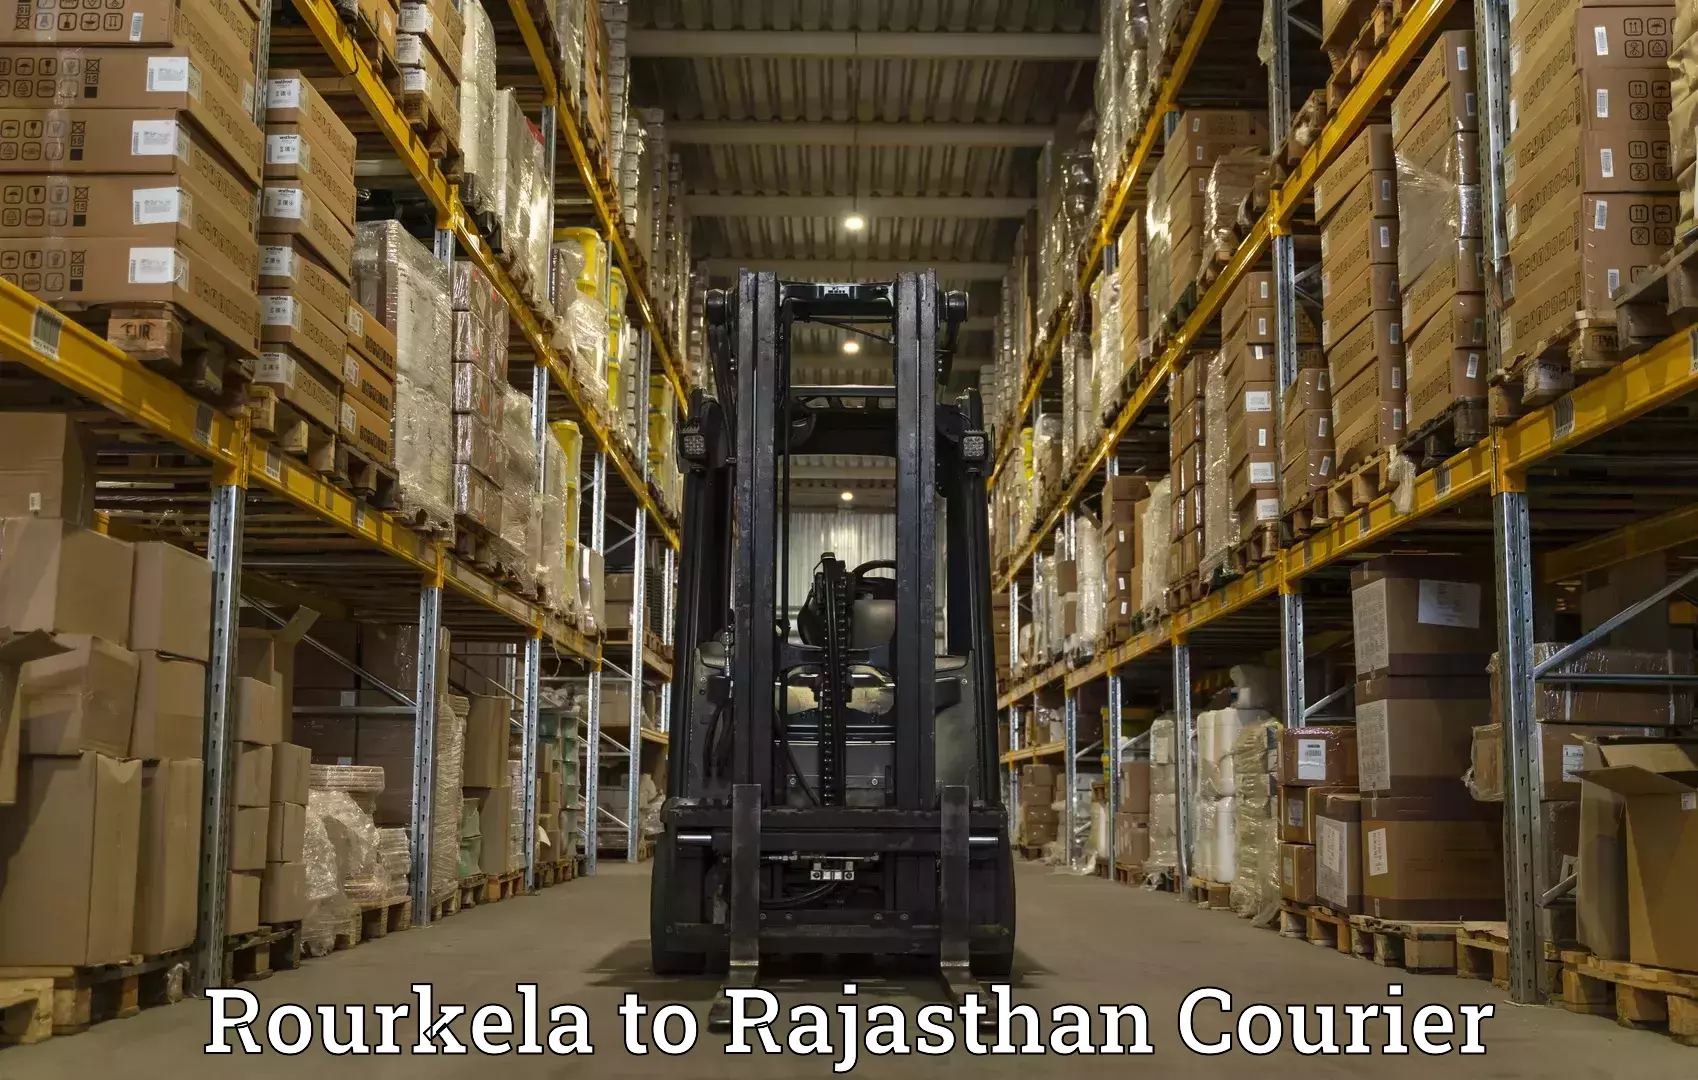 Delivery service partnership Rourkela to Makrana